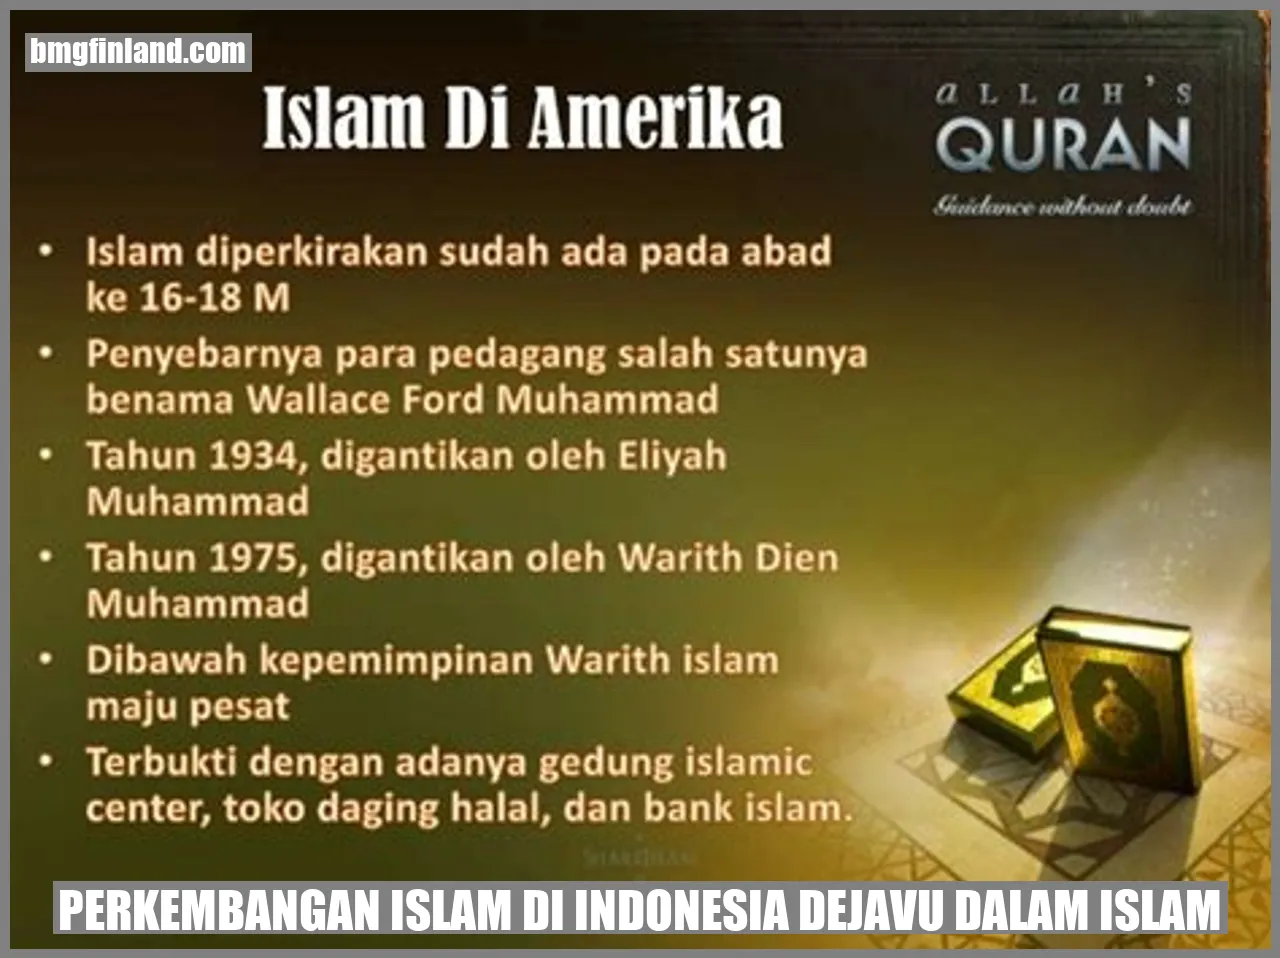 Perkembangan Islam di Indonesia dejavu dalam islam